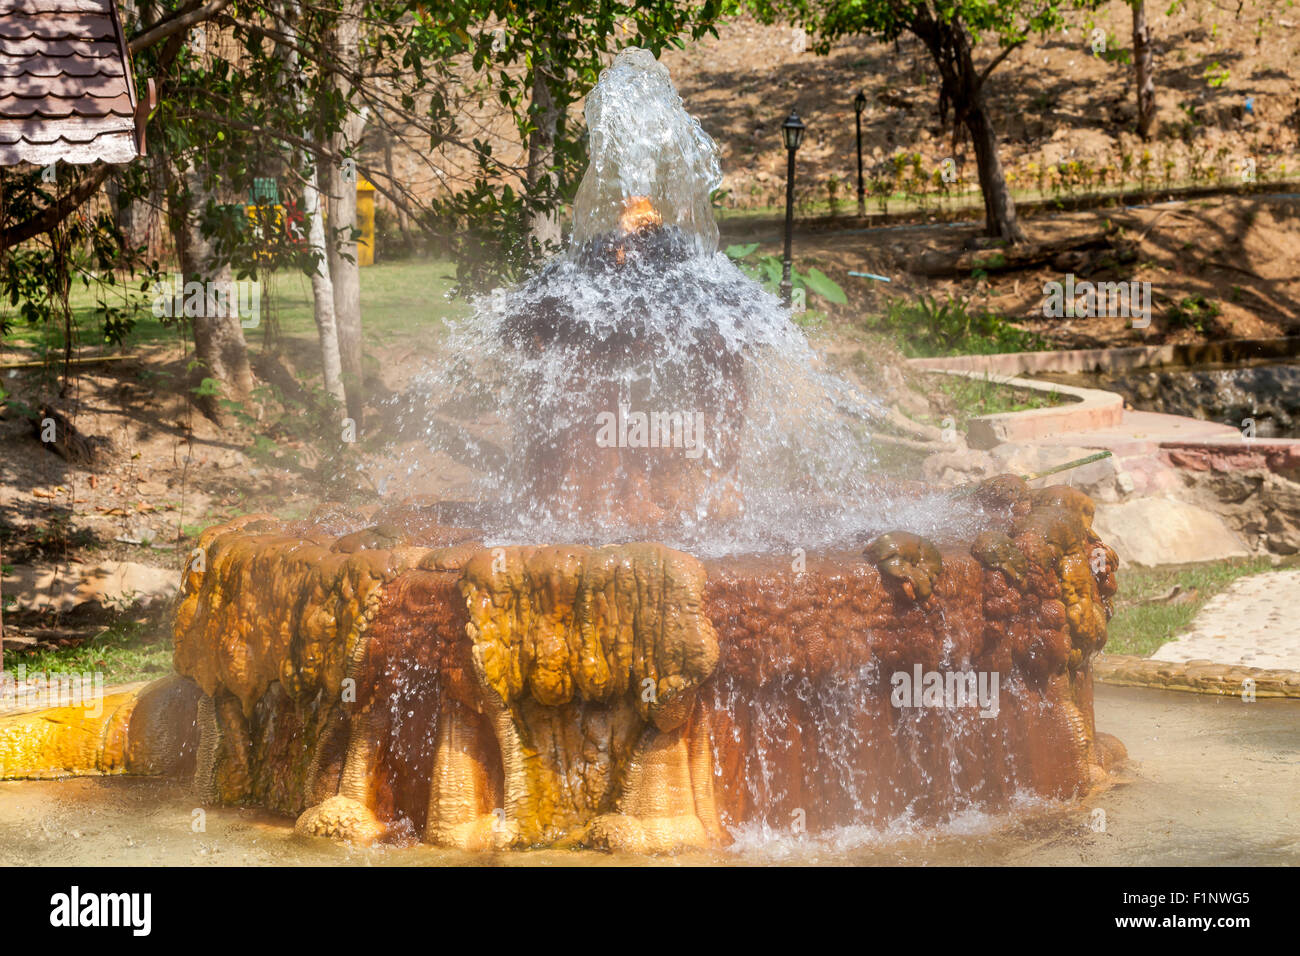 Esta fuente de agua caliente en el corazón de Tailandia tiene una temperatura de 90 grados Foto de stock